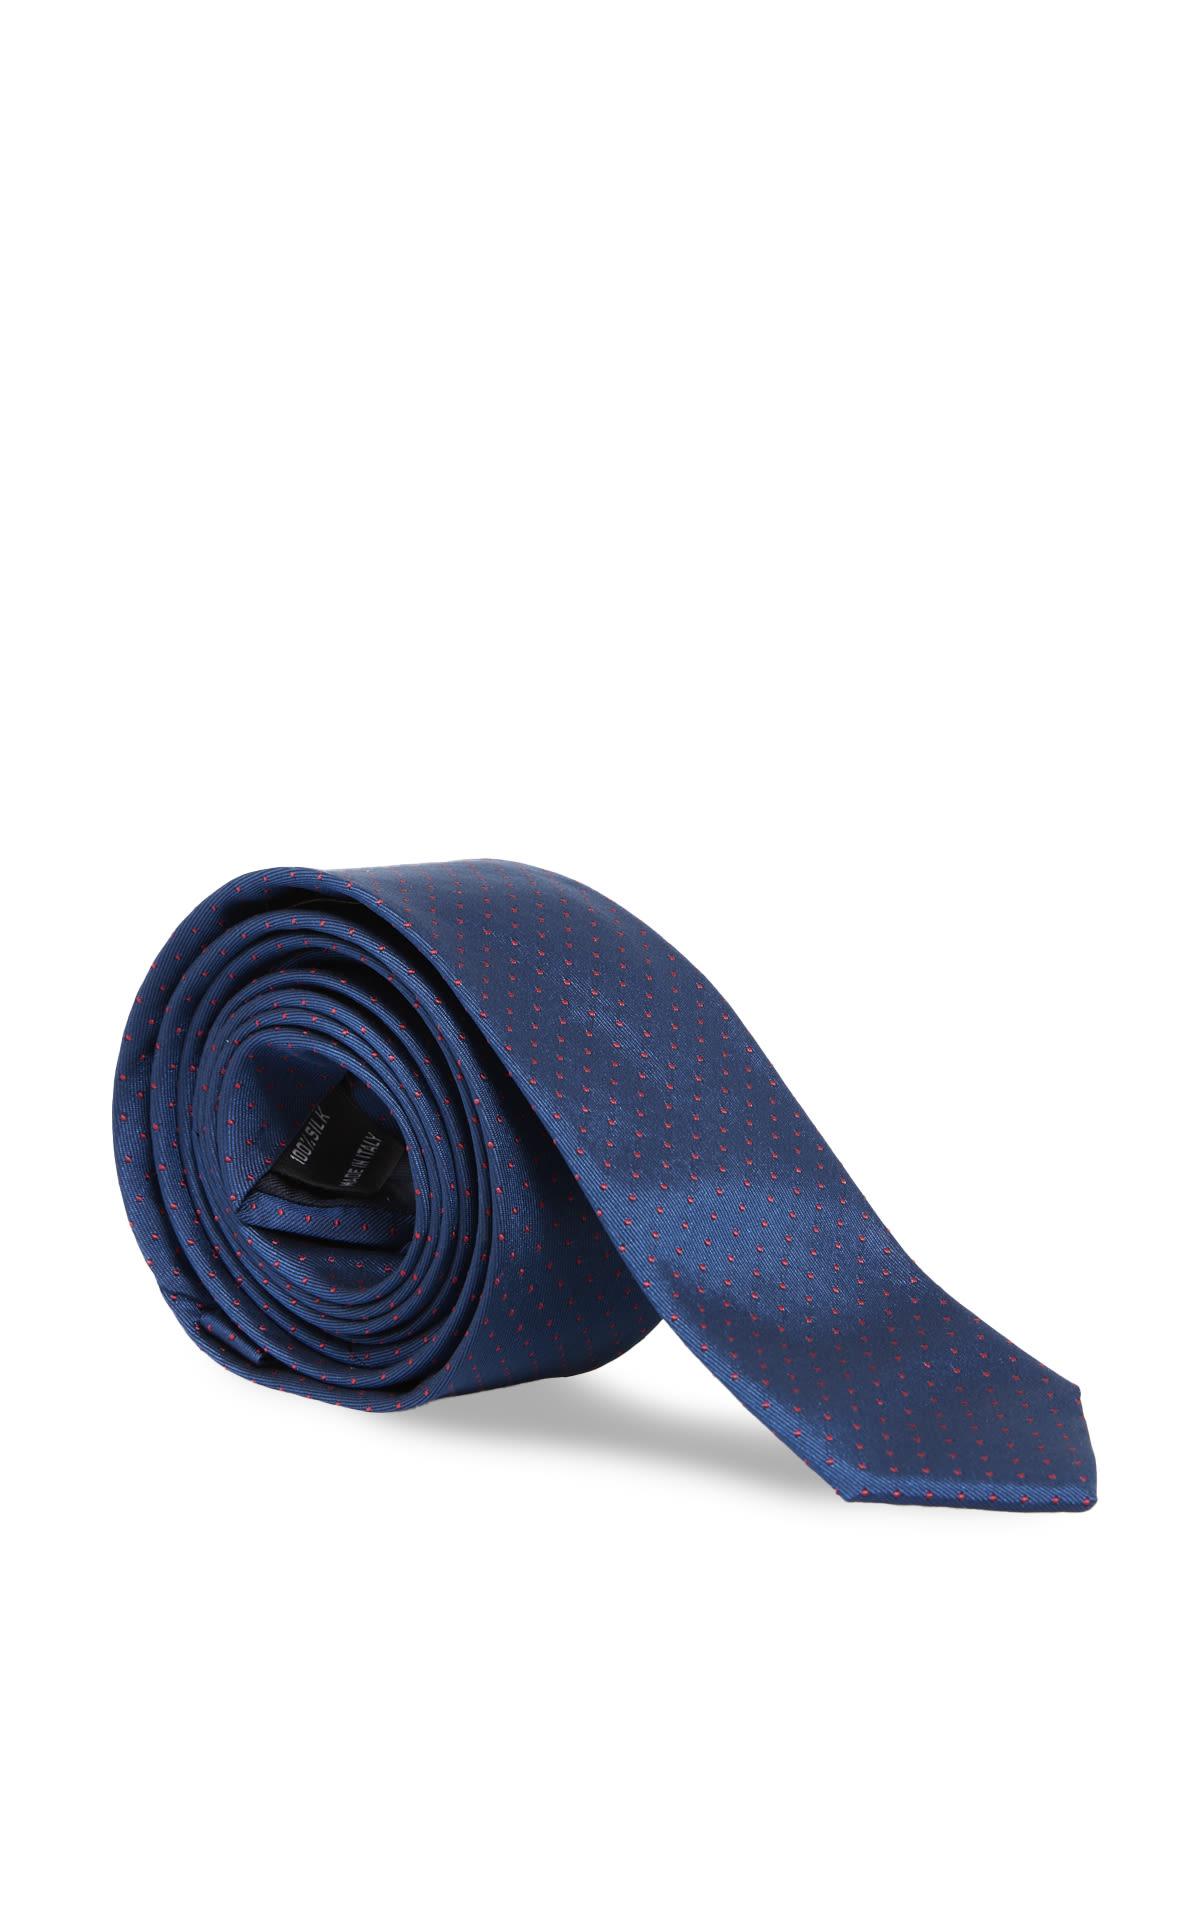 Cravate bleue*